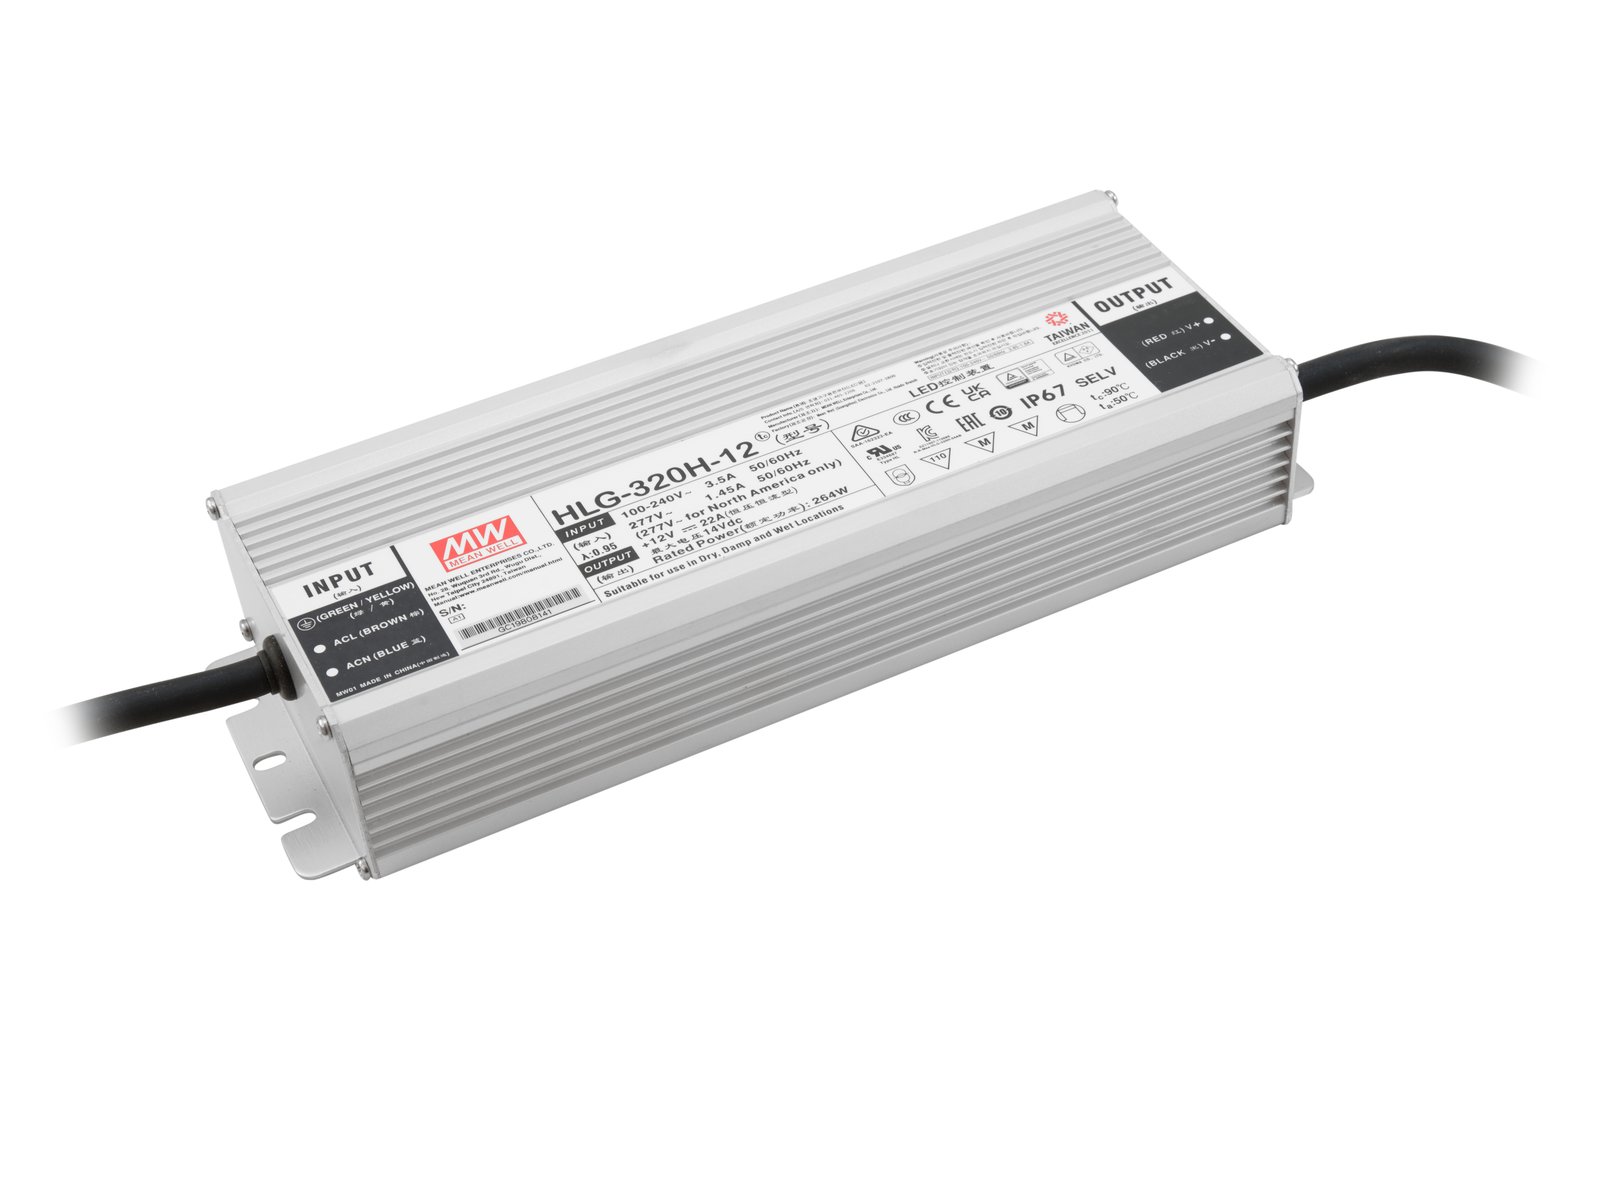 MEANWELL LED Power Supply 264W / 12V IP67 HLG-320H-12